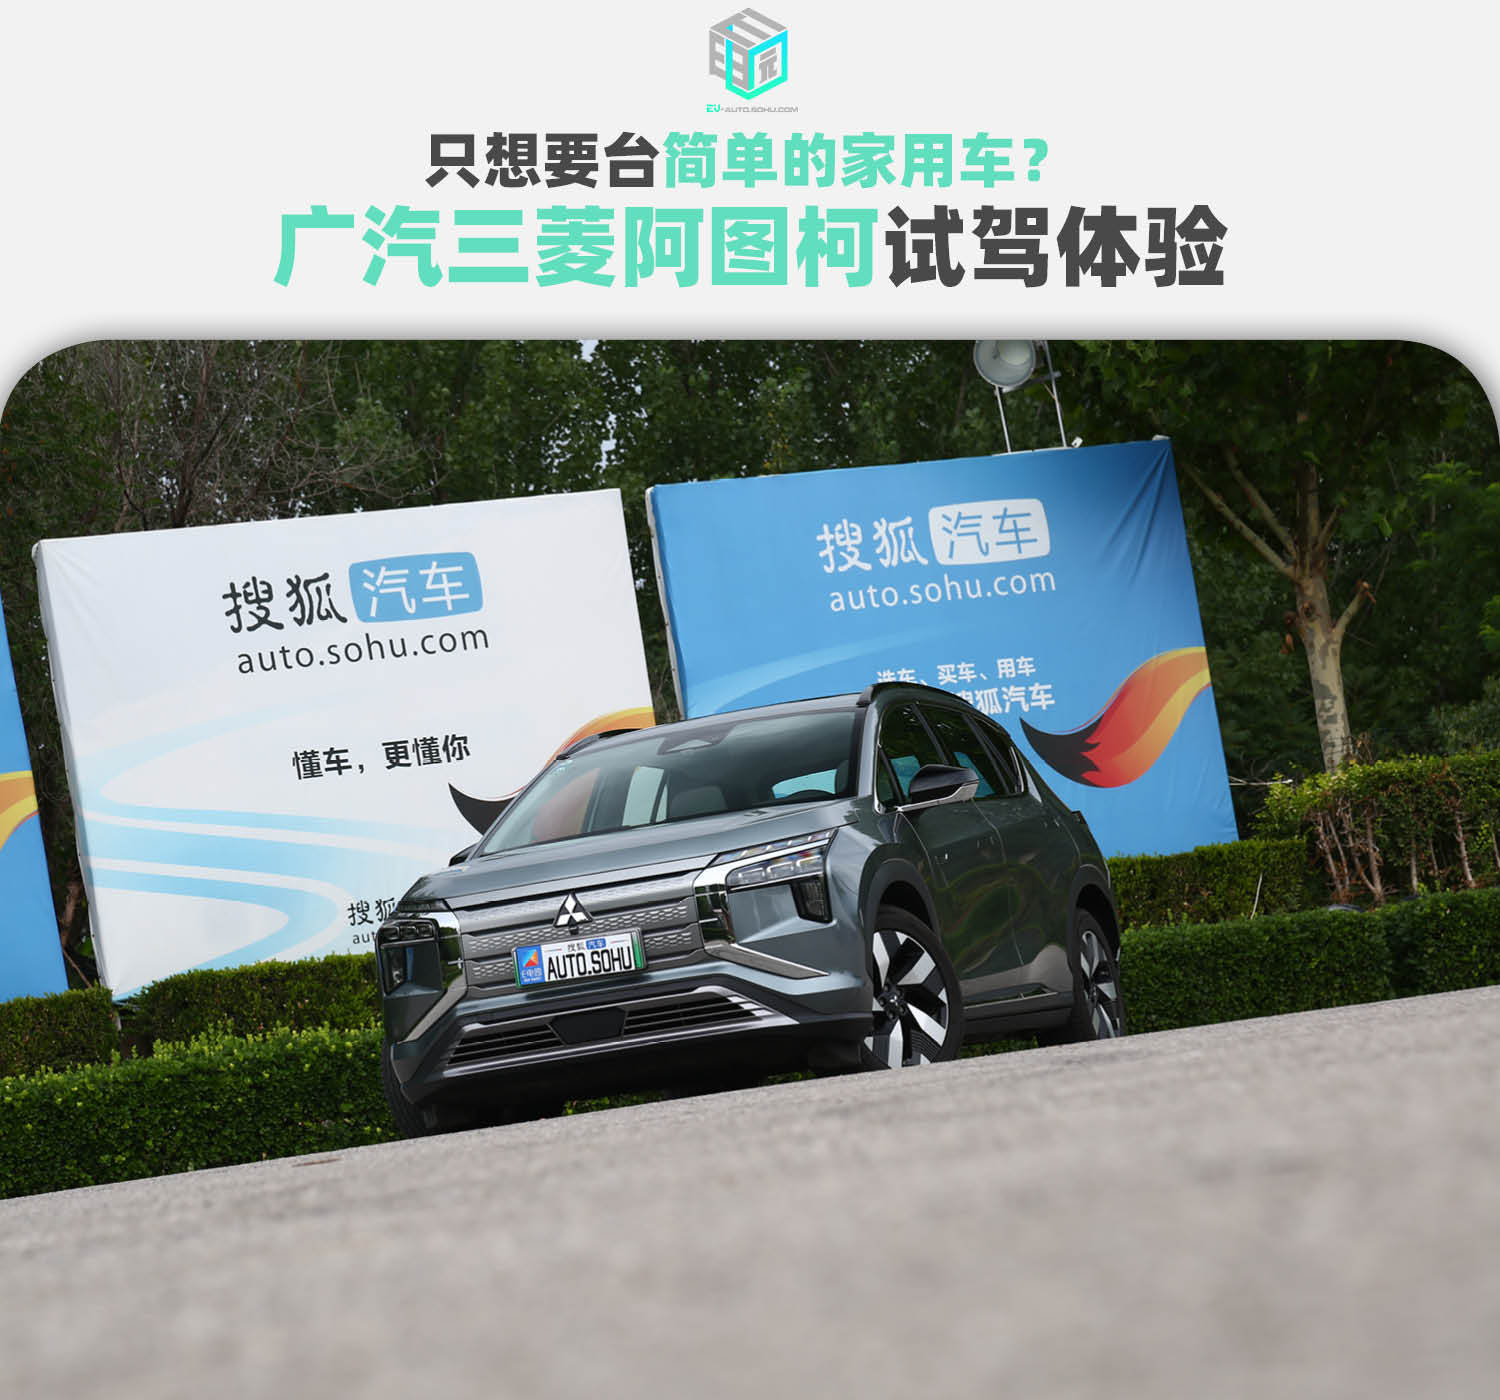 EEZI Vc官圖正式發布 車身覆蓋件快拆設計